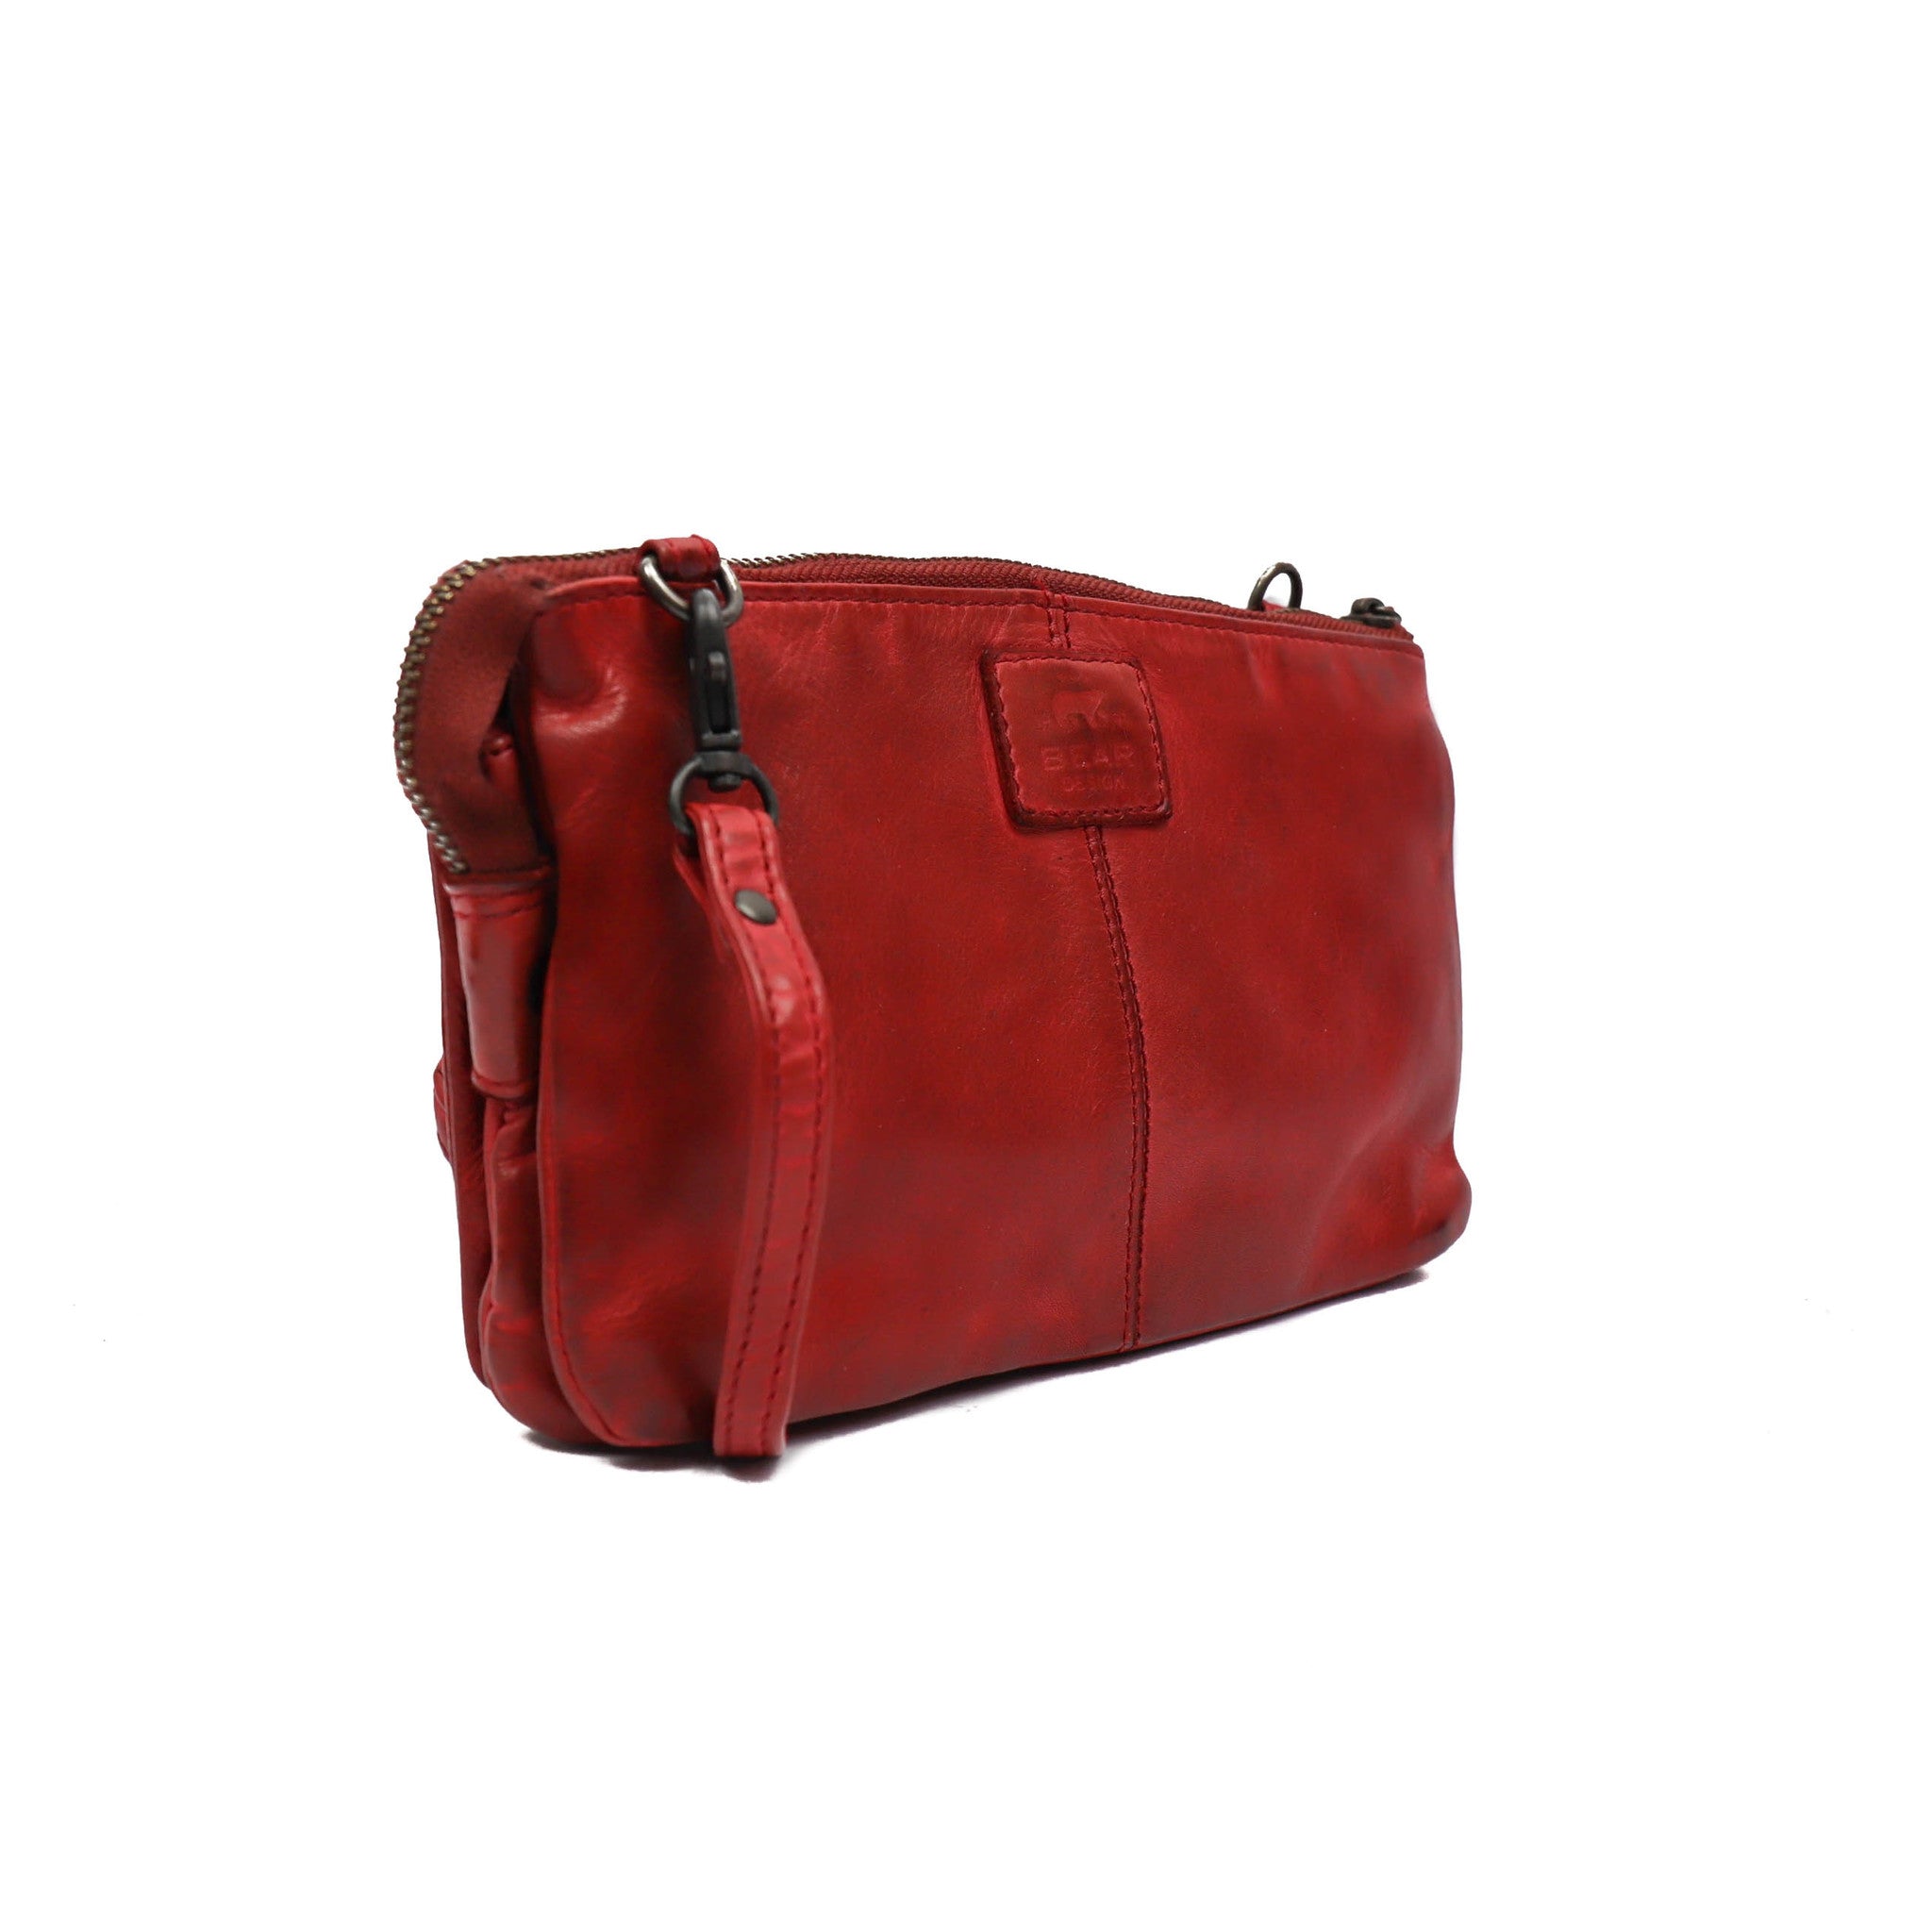 Purse bag 'Uma' red - CL 30996